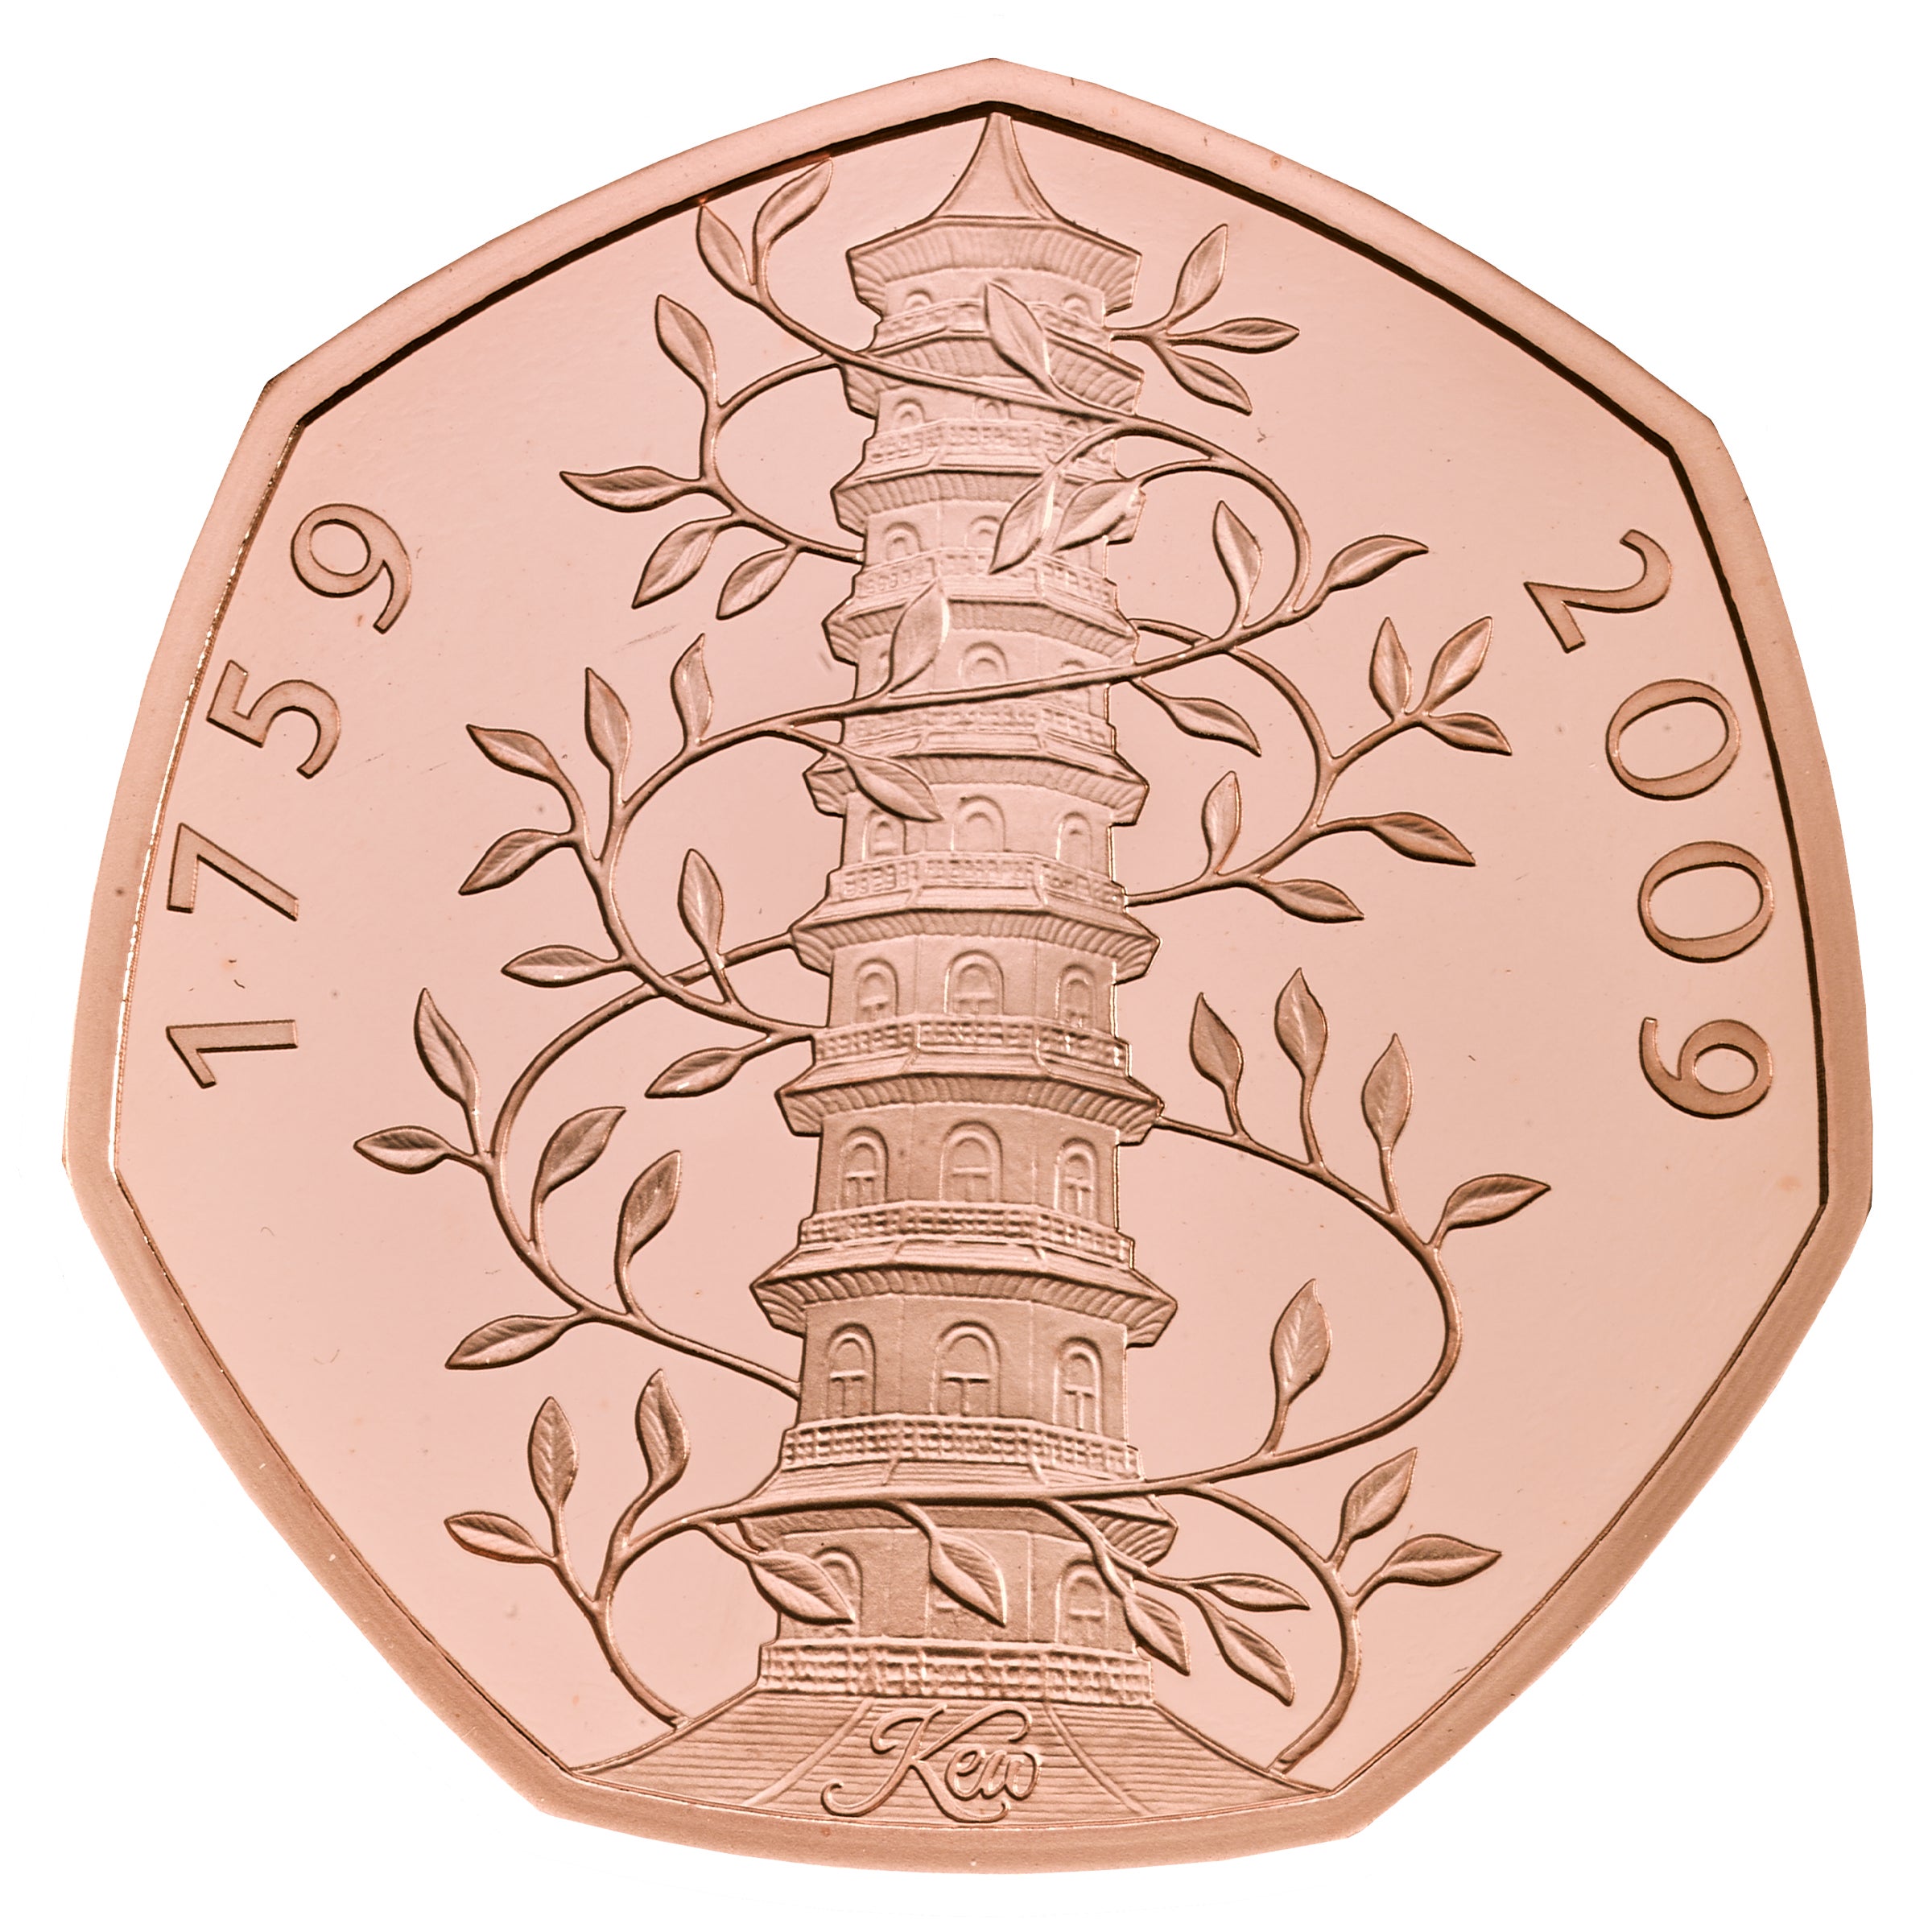 A Kew Gardens 50p trial piece (Royal Mint/PA)